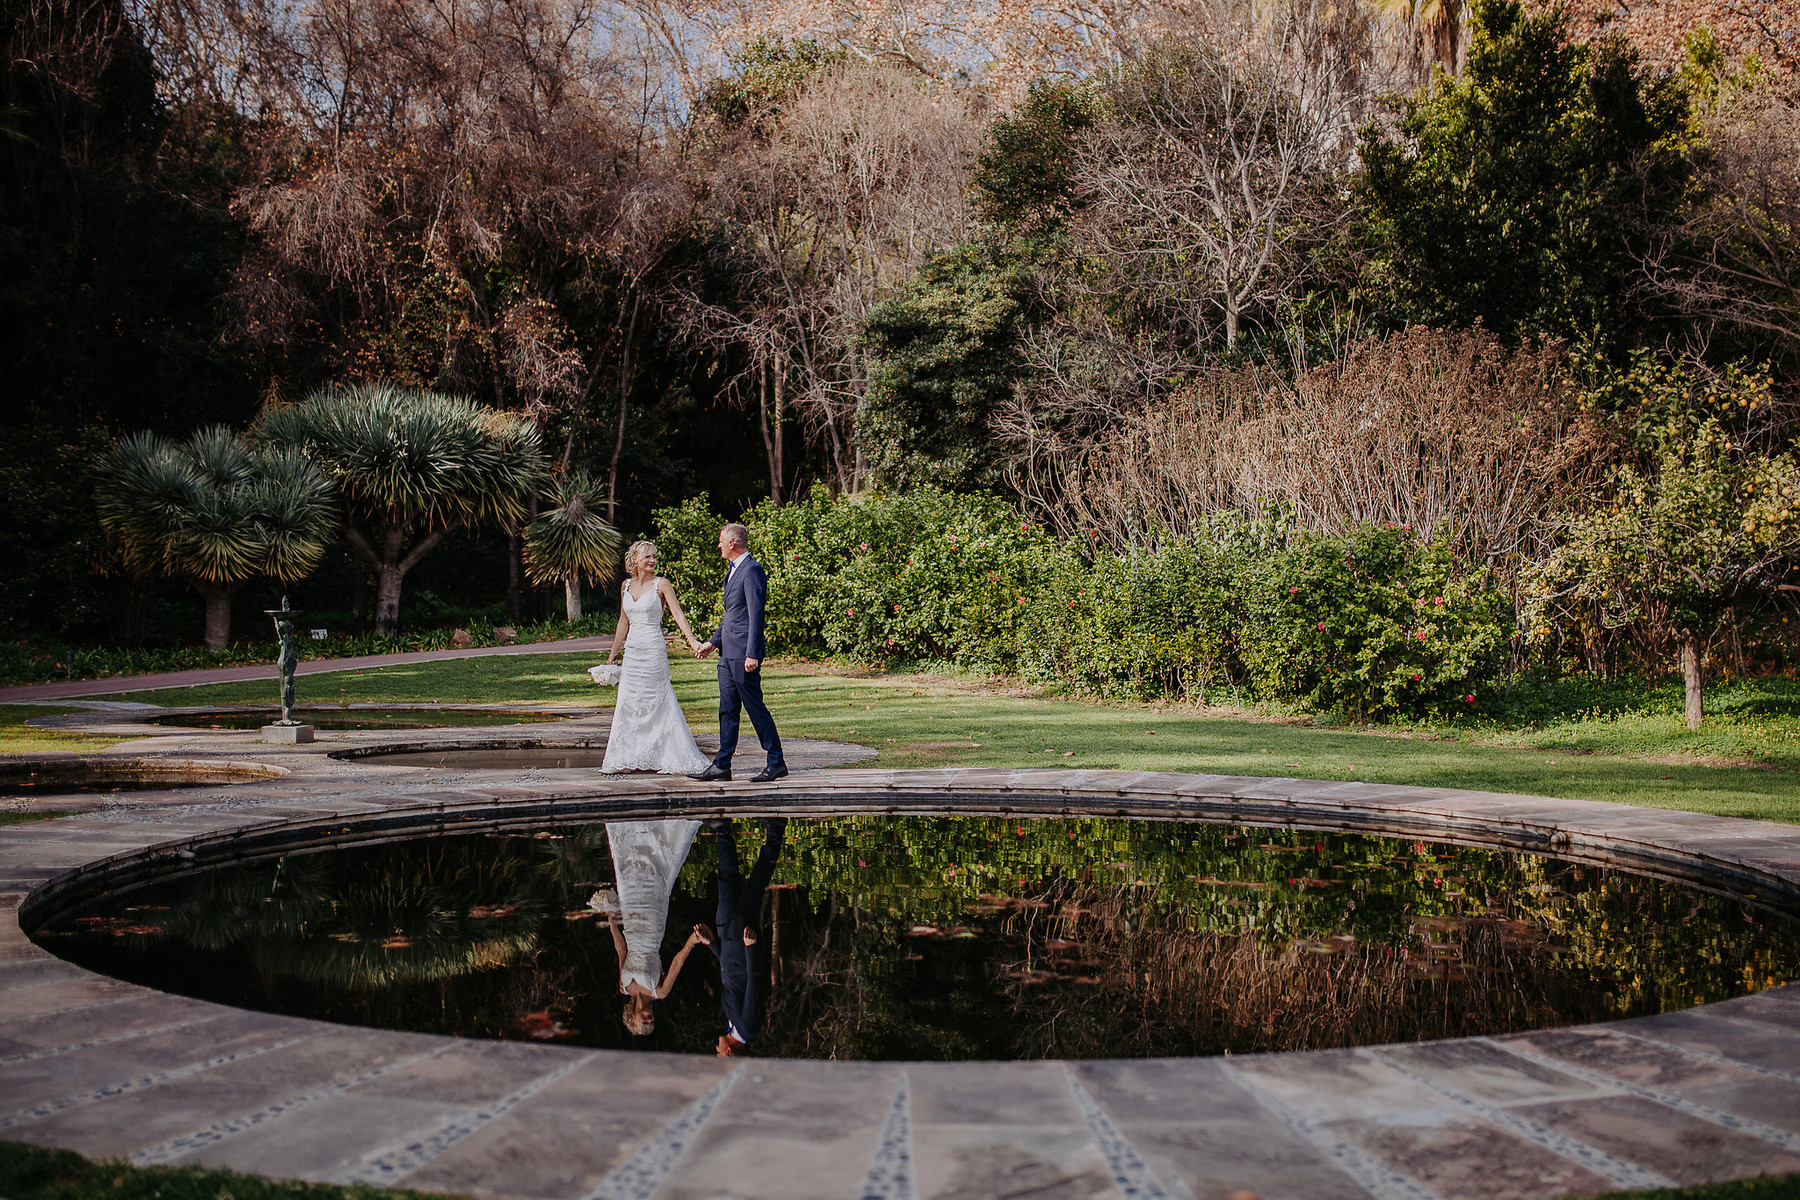 Wedding in the Botanical Garden of Malaga